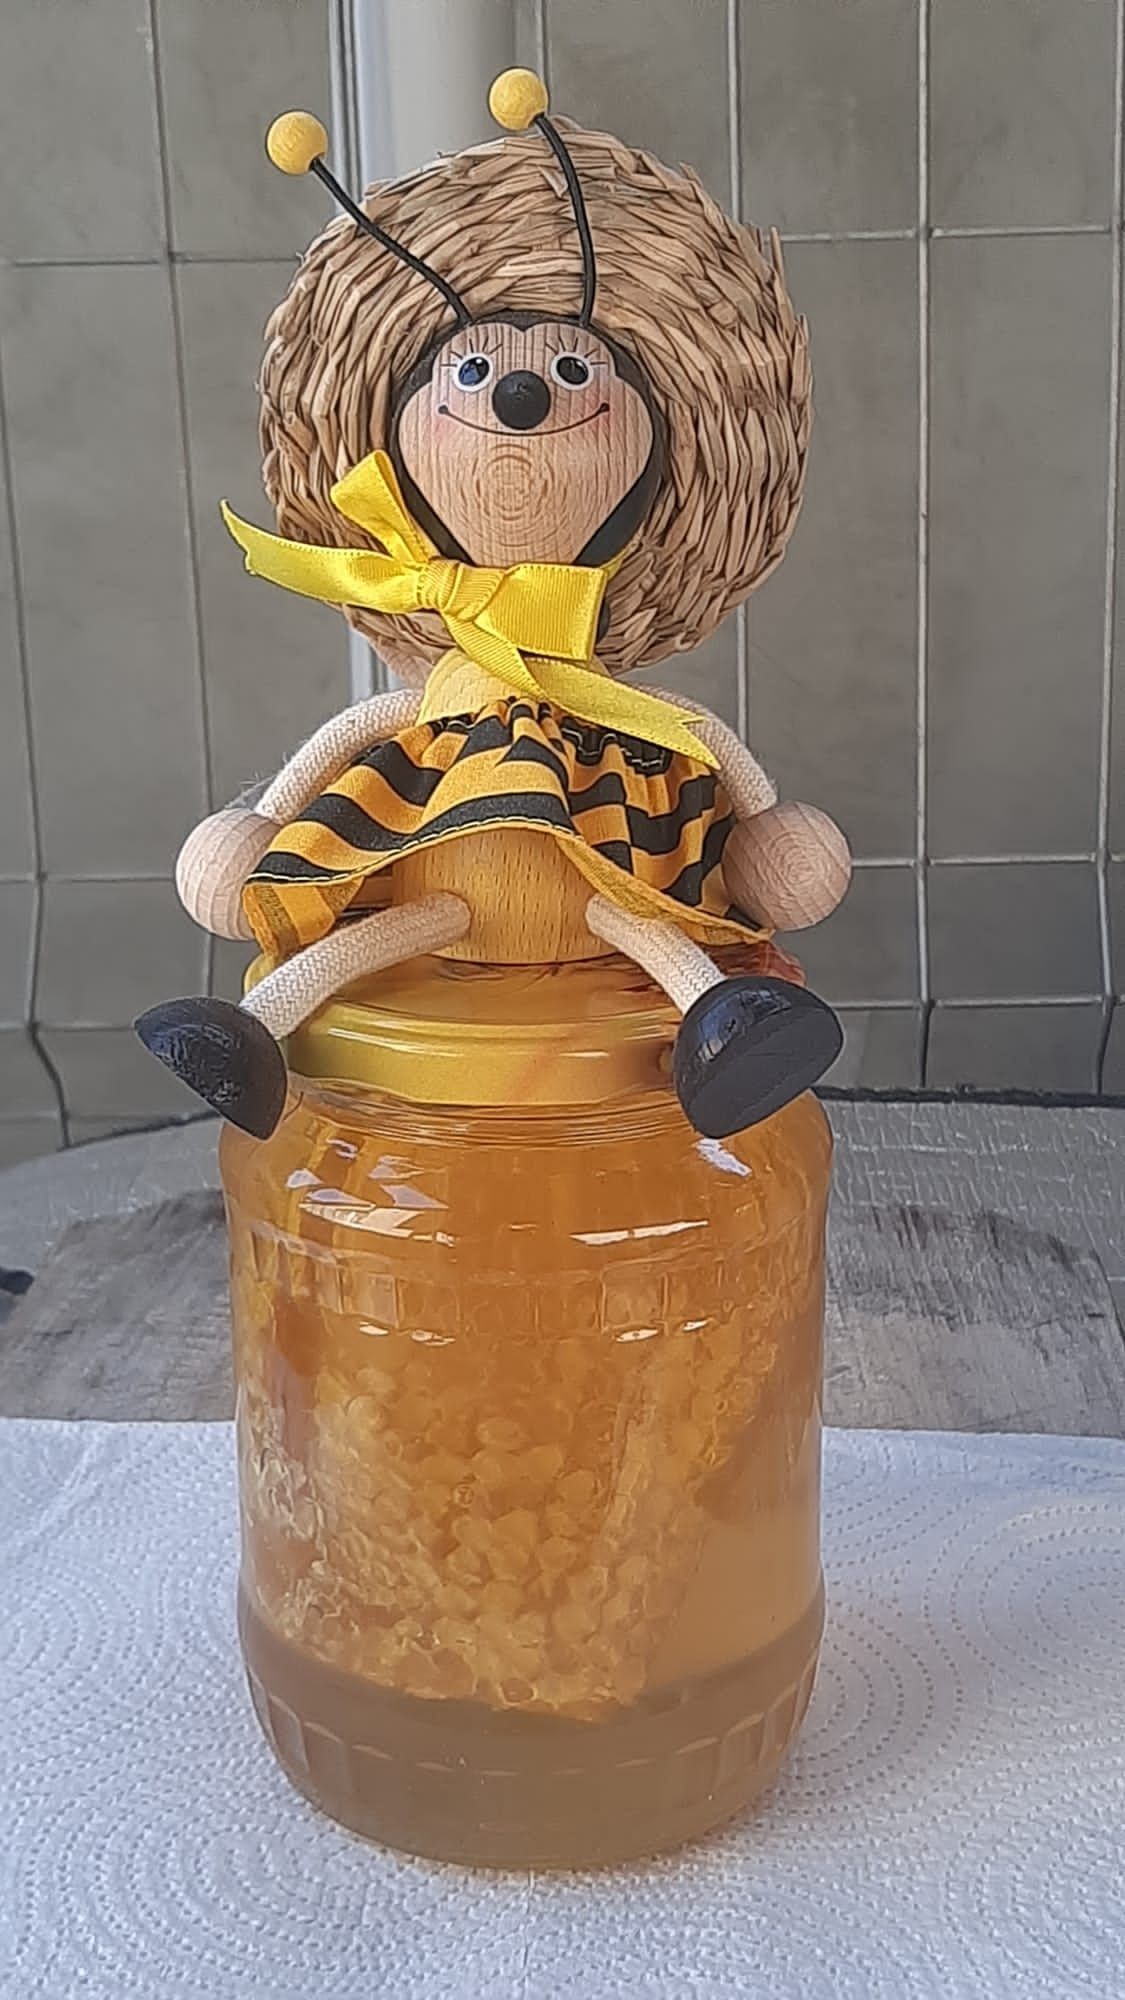 Vanzare miere de albine